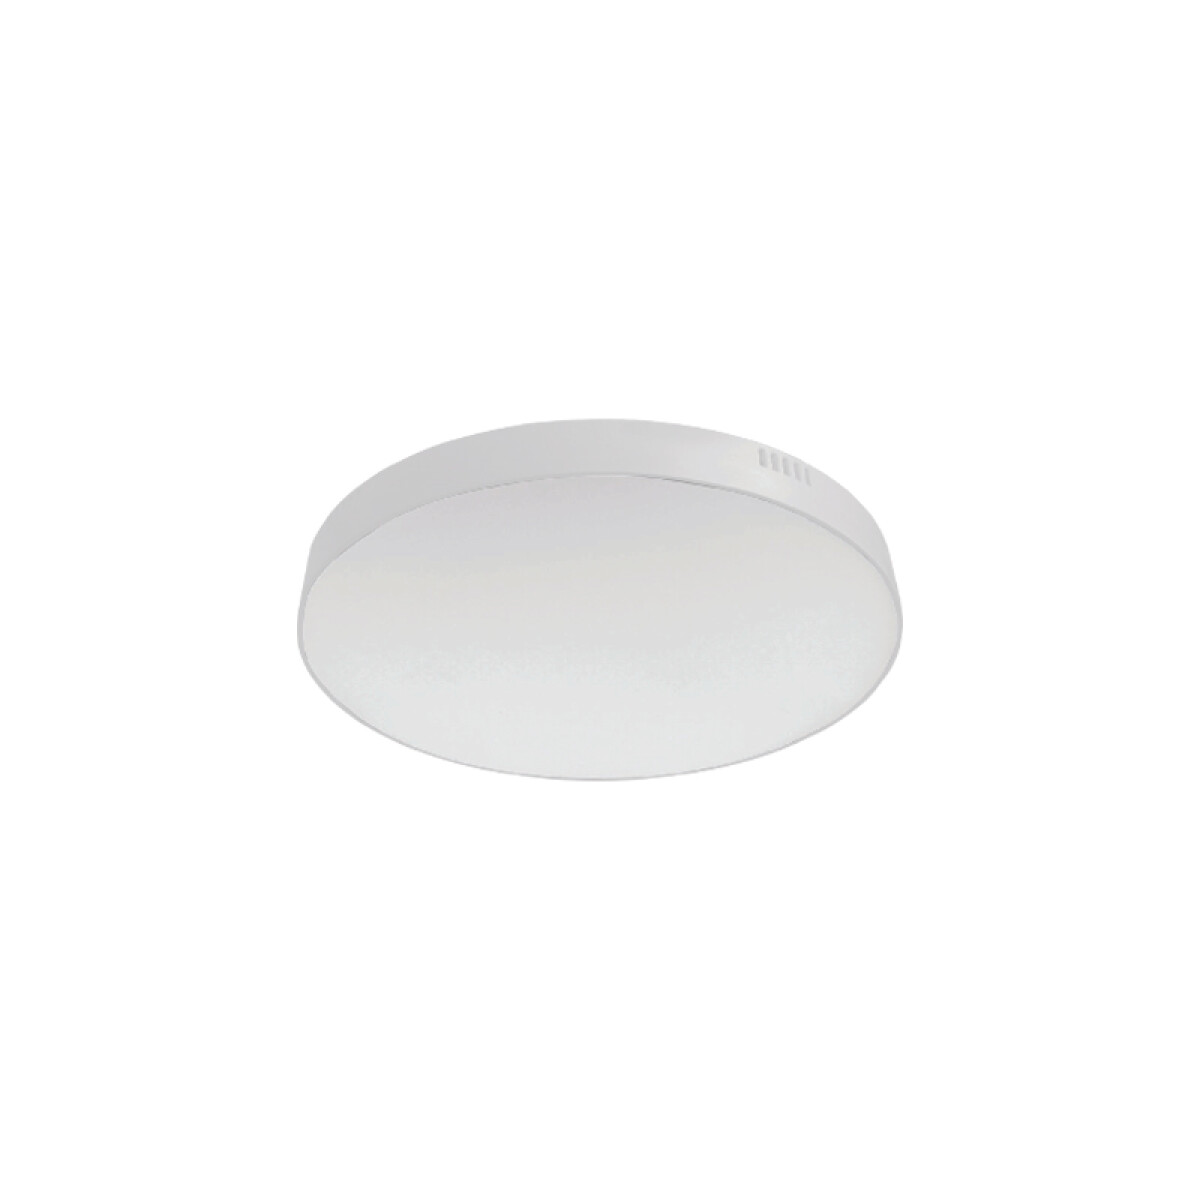 Plafón LED redondo 15W blanco, luz neutra Ø160mm - NV2137 